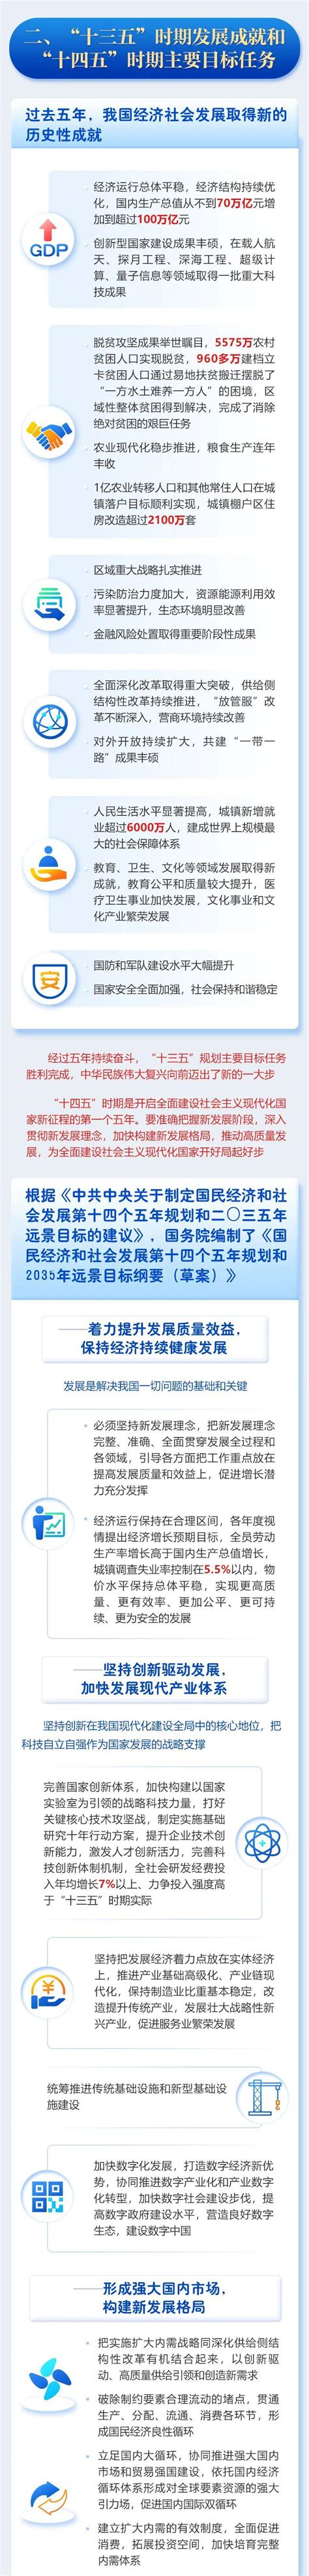 一图读懂2021年济宁市政府工作报告_济宁新闻_大众网·济宁